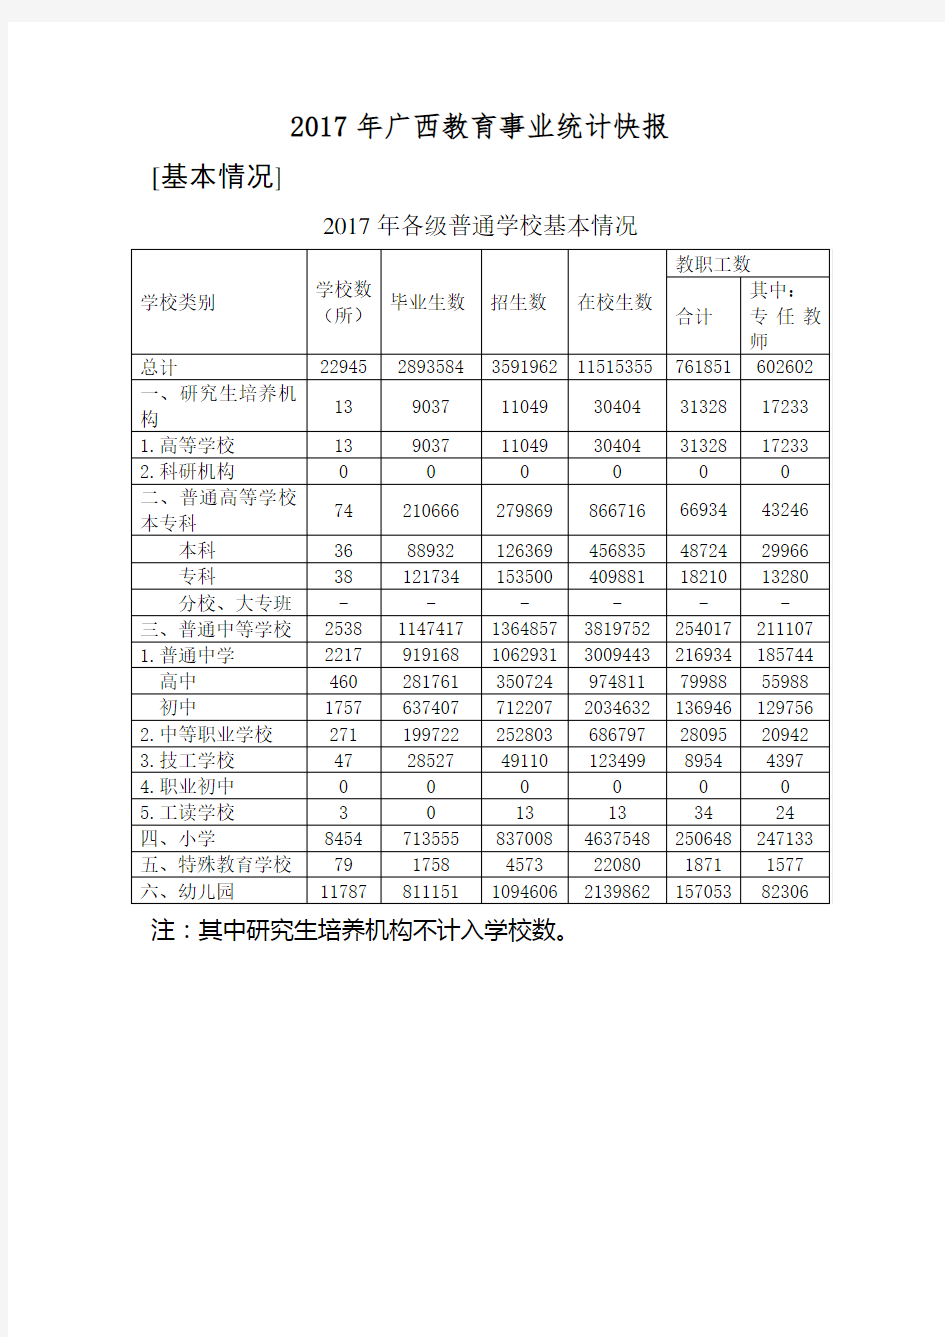 2017年广西教育事业统计快报